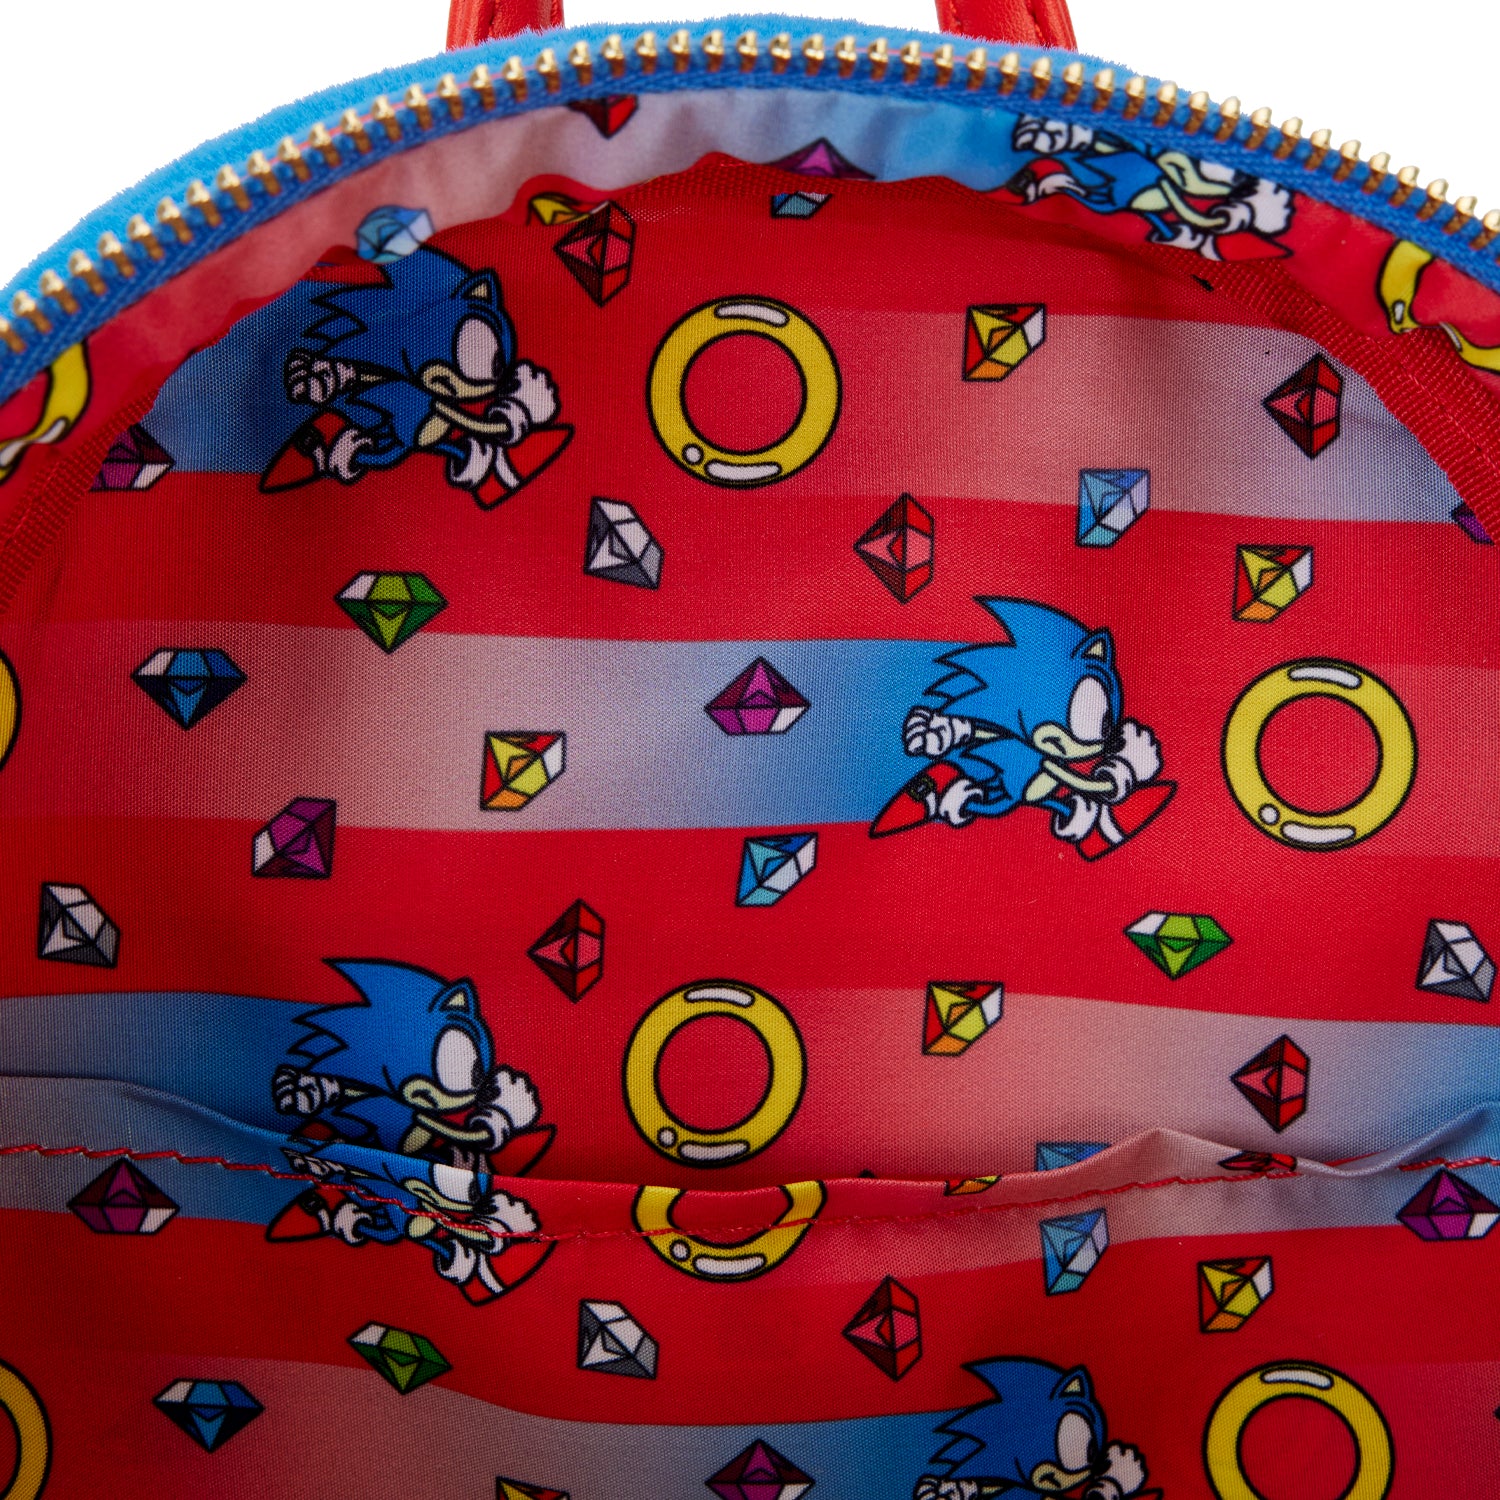 Sega | Sonic The Hedgehog Cosplay Mini Backpack